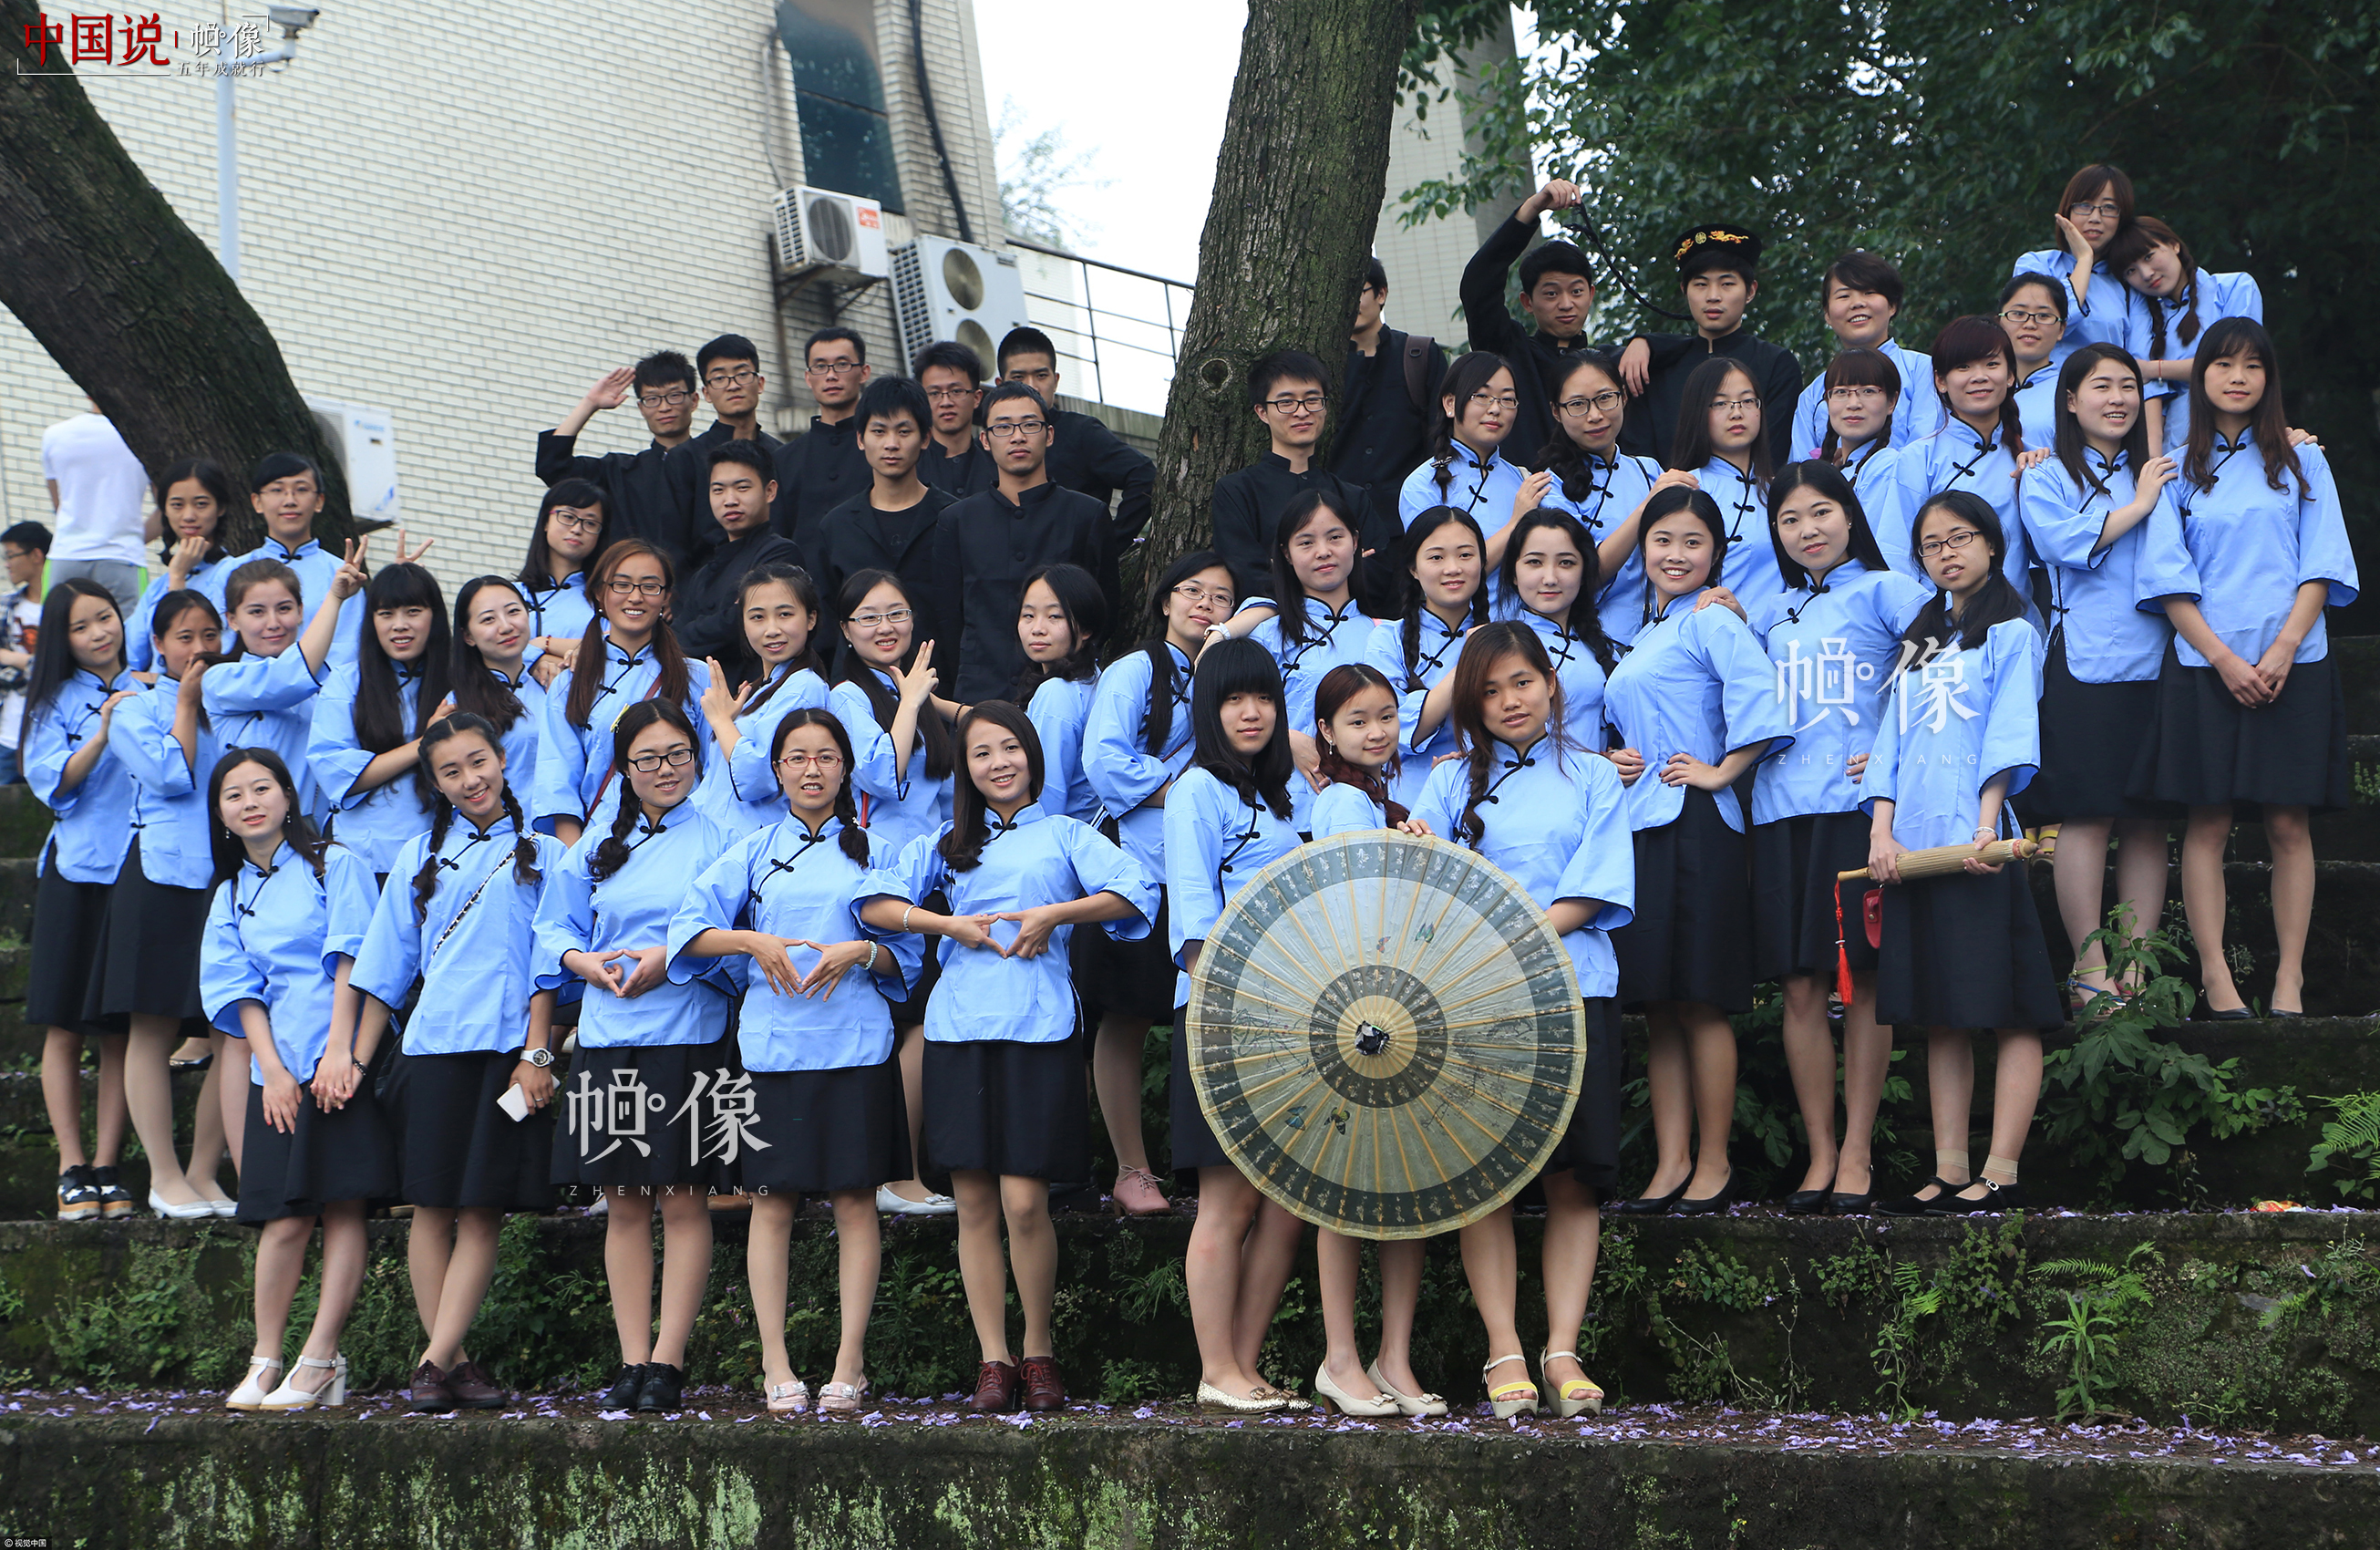 2015年5月23日，重庆市北碚区西南大学校园内，身着民国服装的大学毕业生正在拍摄毕业照。视觉中国供图